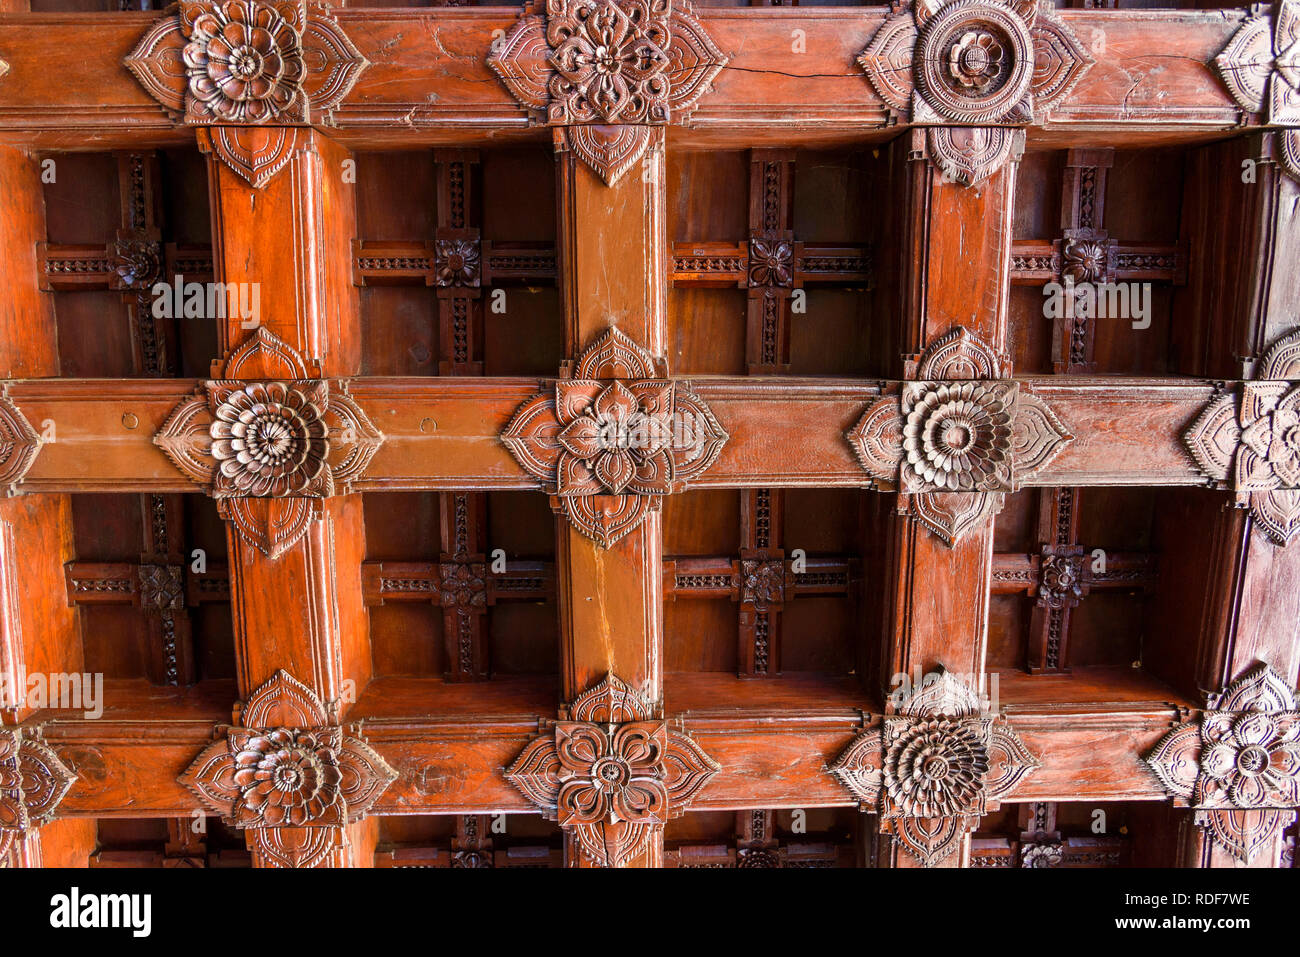 Plafond en bois orné, Padmanabhapuram Palace, typique de l'architecture Keralan, Tamil Nadu, Inde Banque D'Images